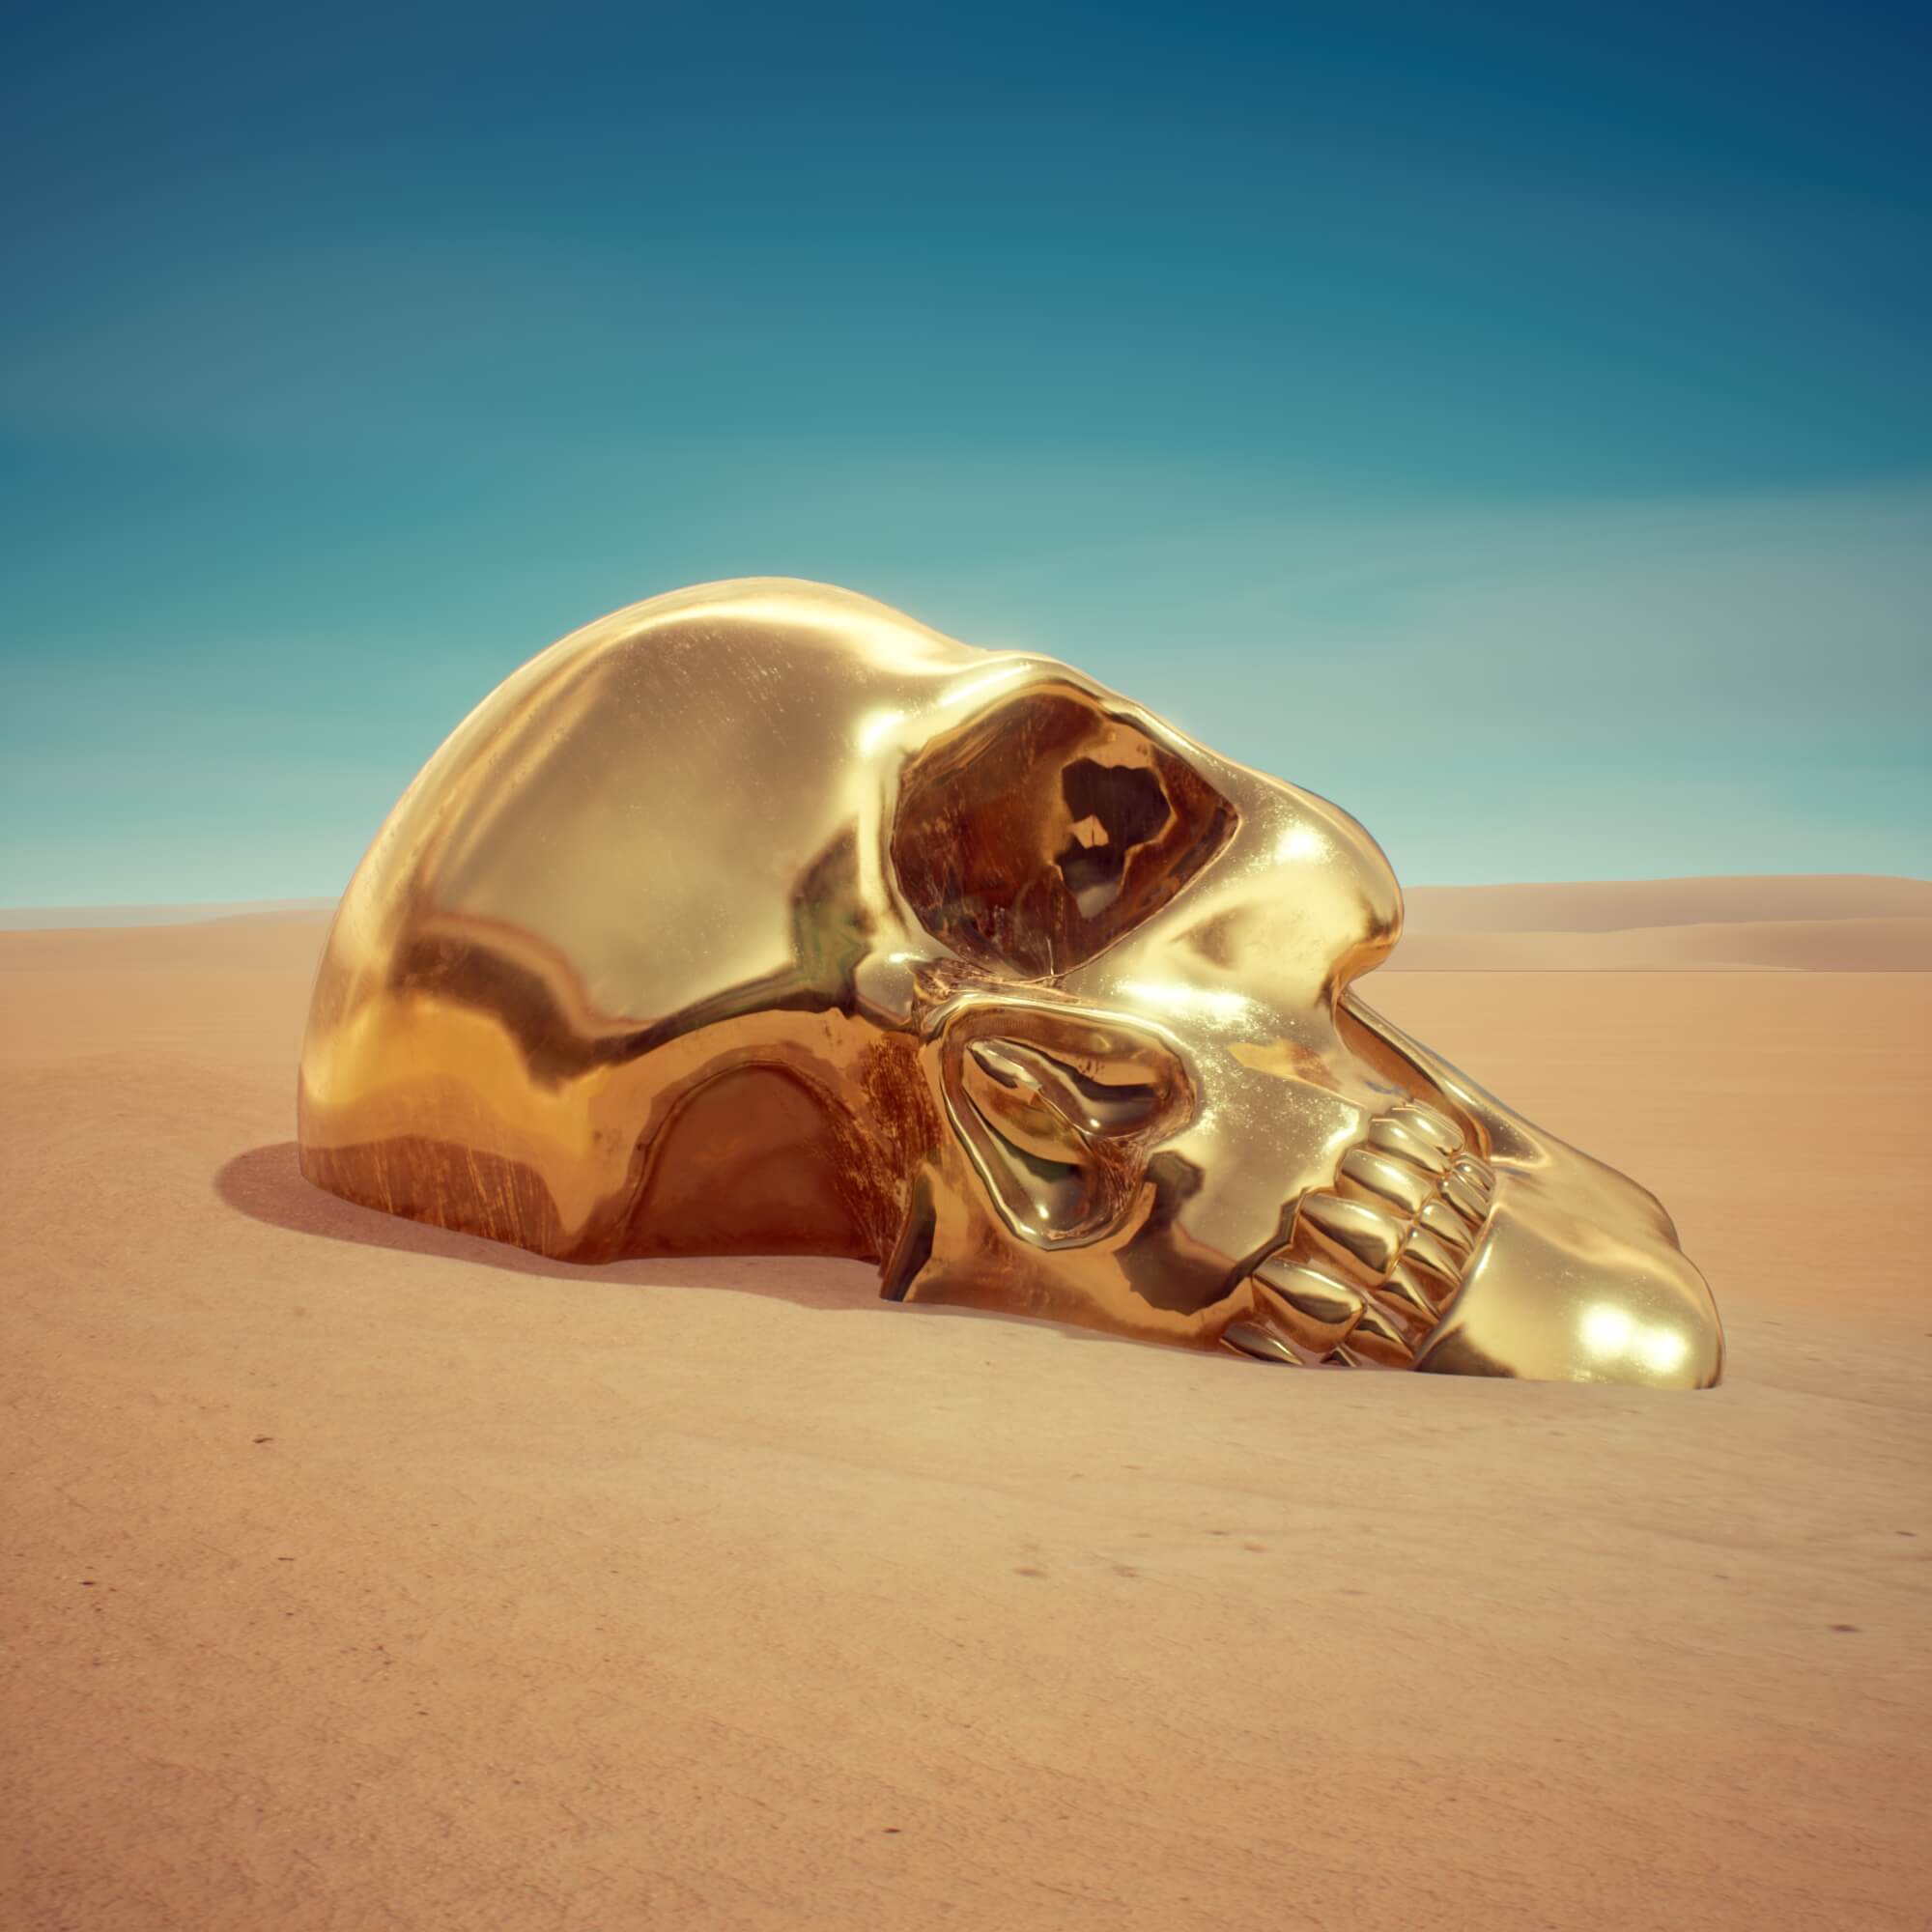 Sandskull gold